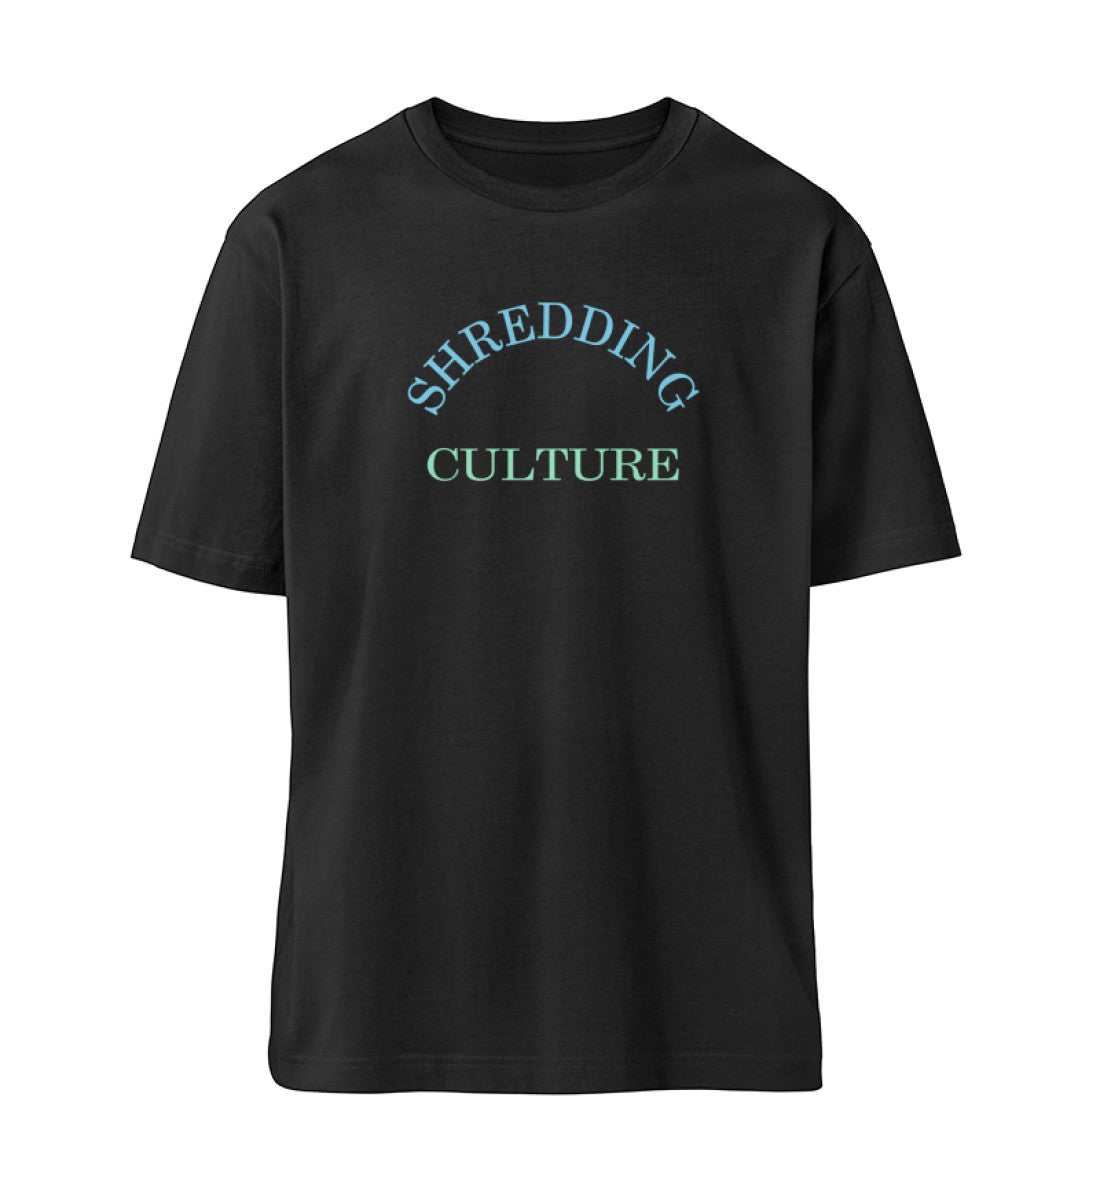 Schwarzes T-Shirt Unisex Relaxed Fit für Damen und Herren bedruckt mit dem Design der Roger Rockawoo Kollektion Mountainbike Shredding Culture Community